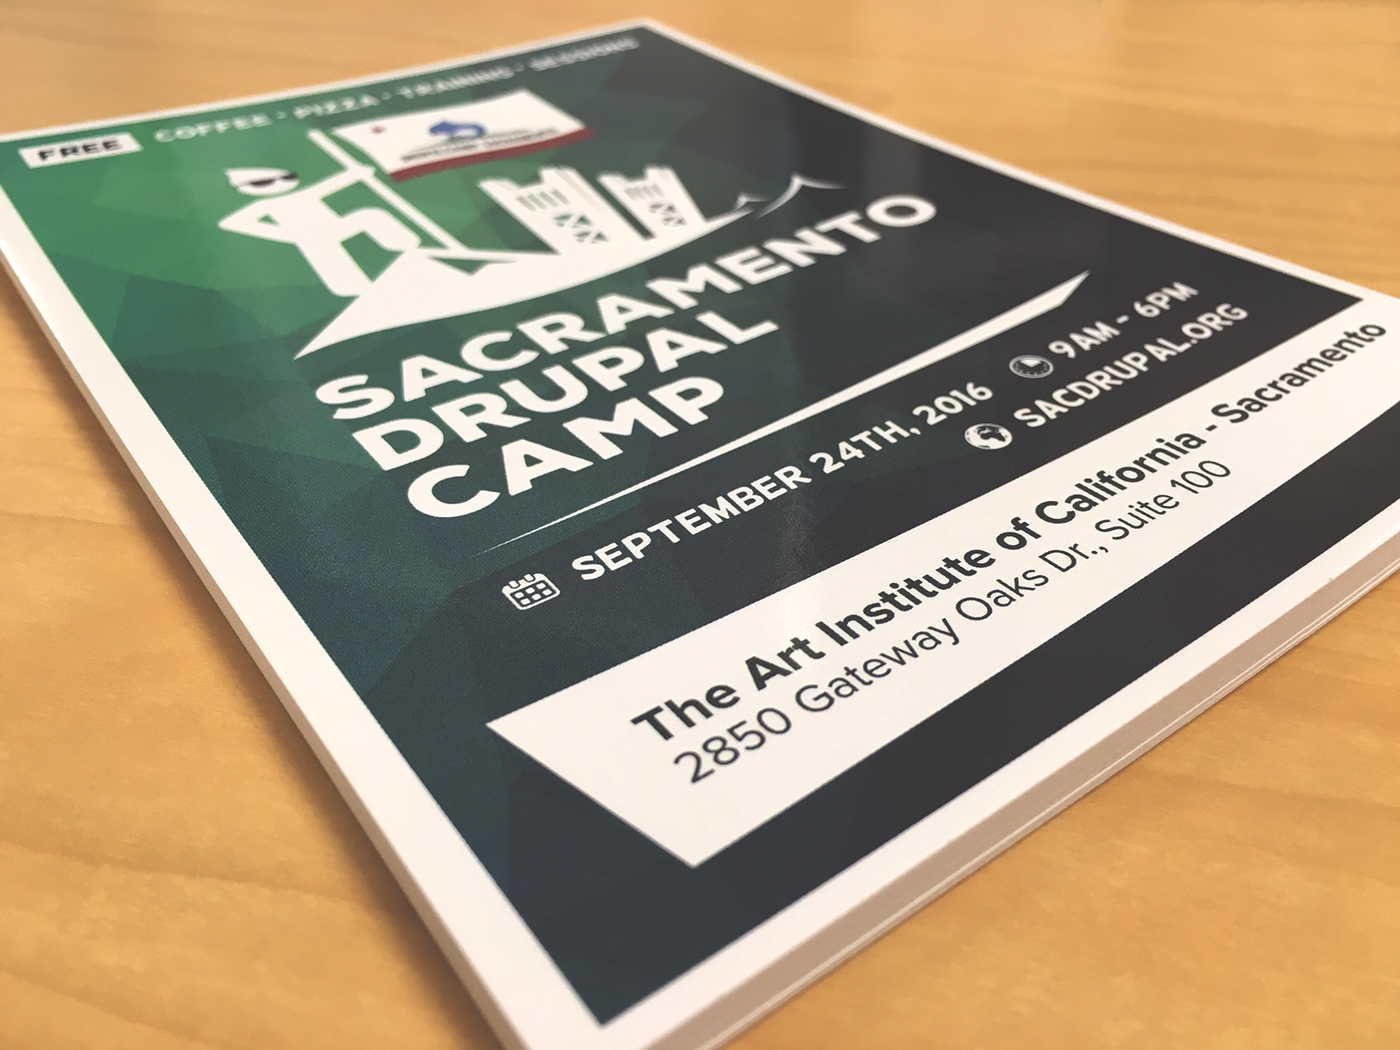 flyer handout Drupal Camp sacramento graphic design 